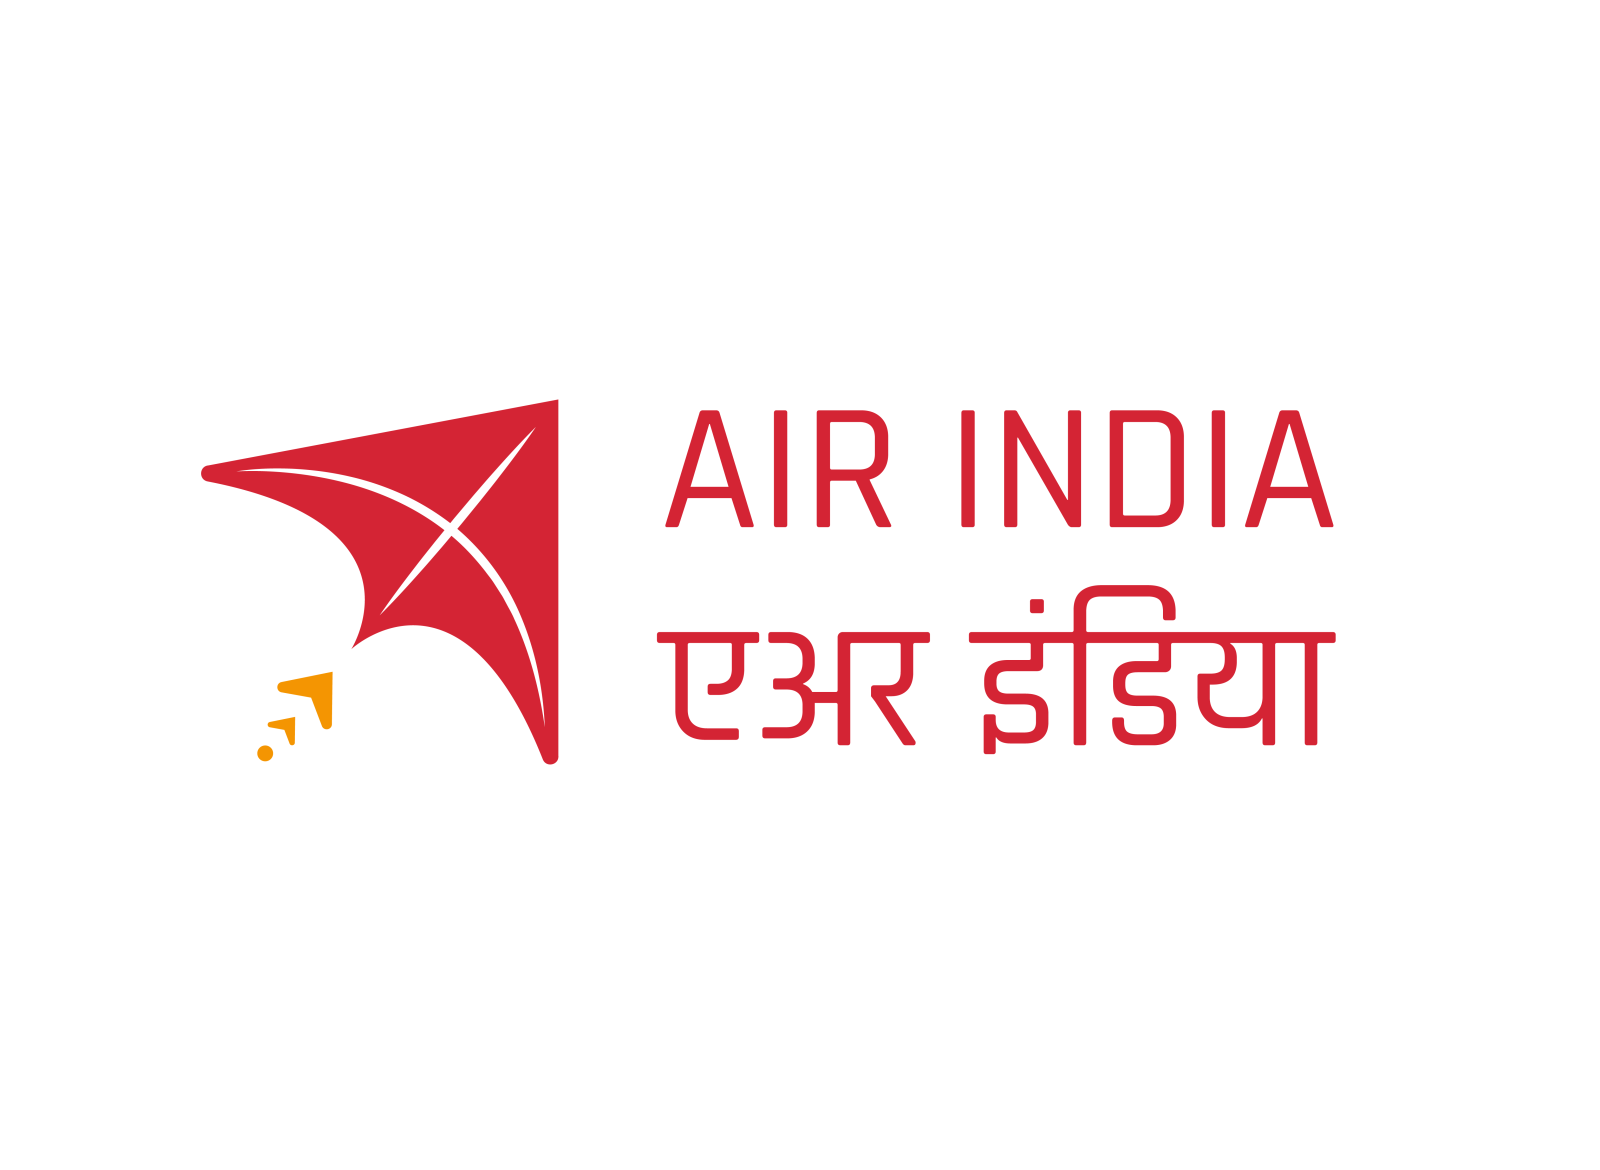 கெட்டுப்போன டாடா கையில் 3 விமான நிறுவனங்கள்.. சுப்பிரமணியன் சாமி டிவீட்..!  | Rotten Tata now runs 3 airlines Air Asia, Vistara, Air India says  Subramanian Swamy in Twitter - Tamil Goodreturns